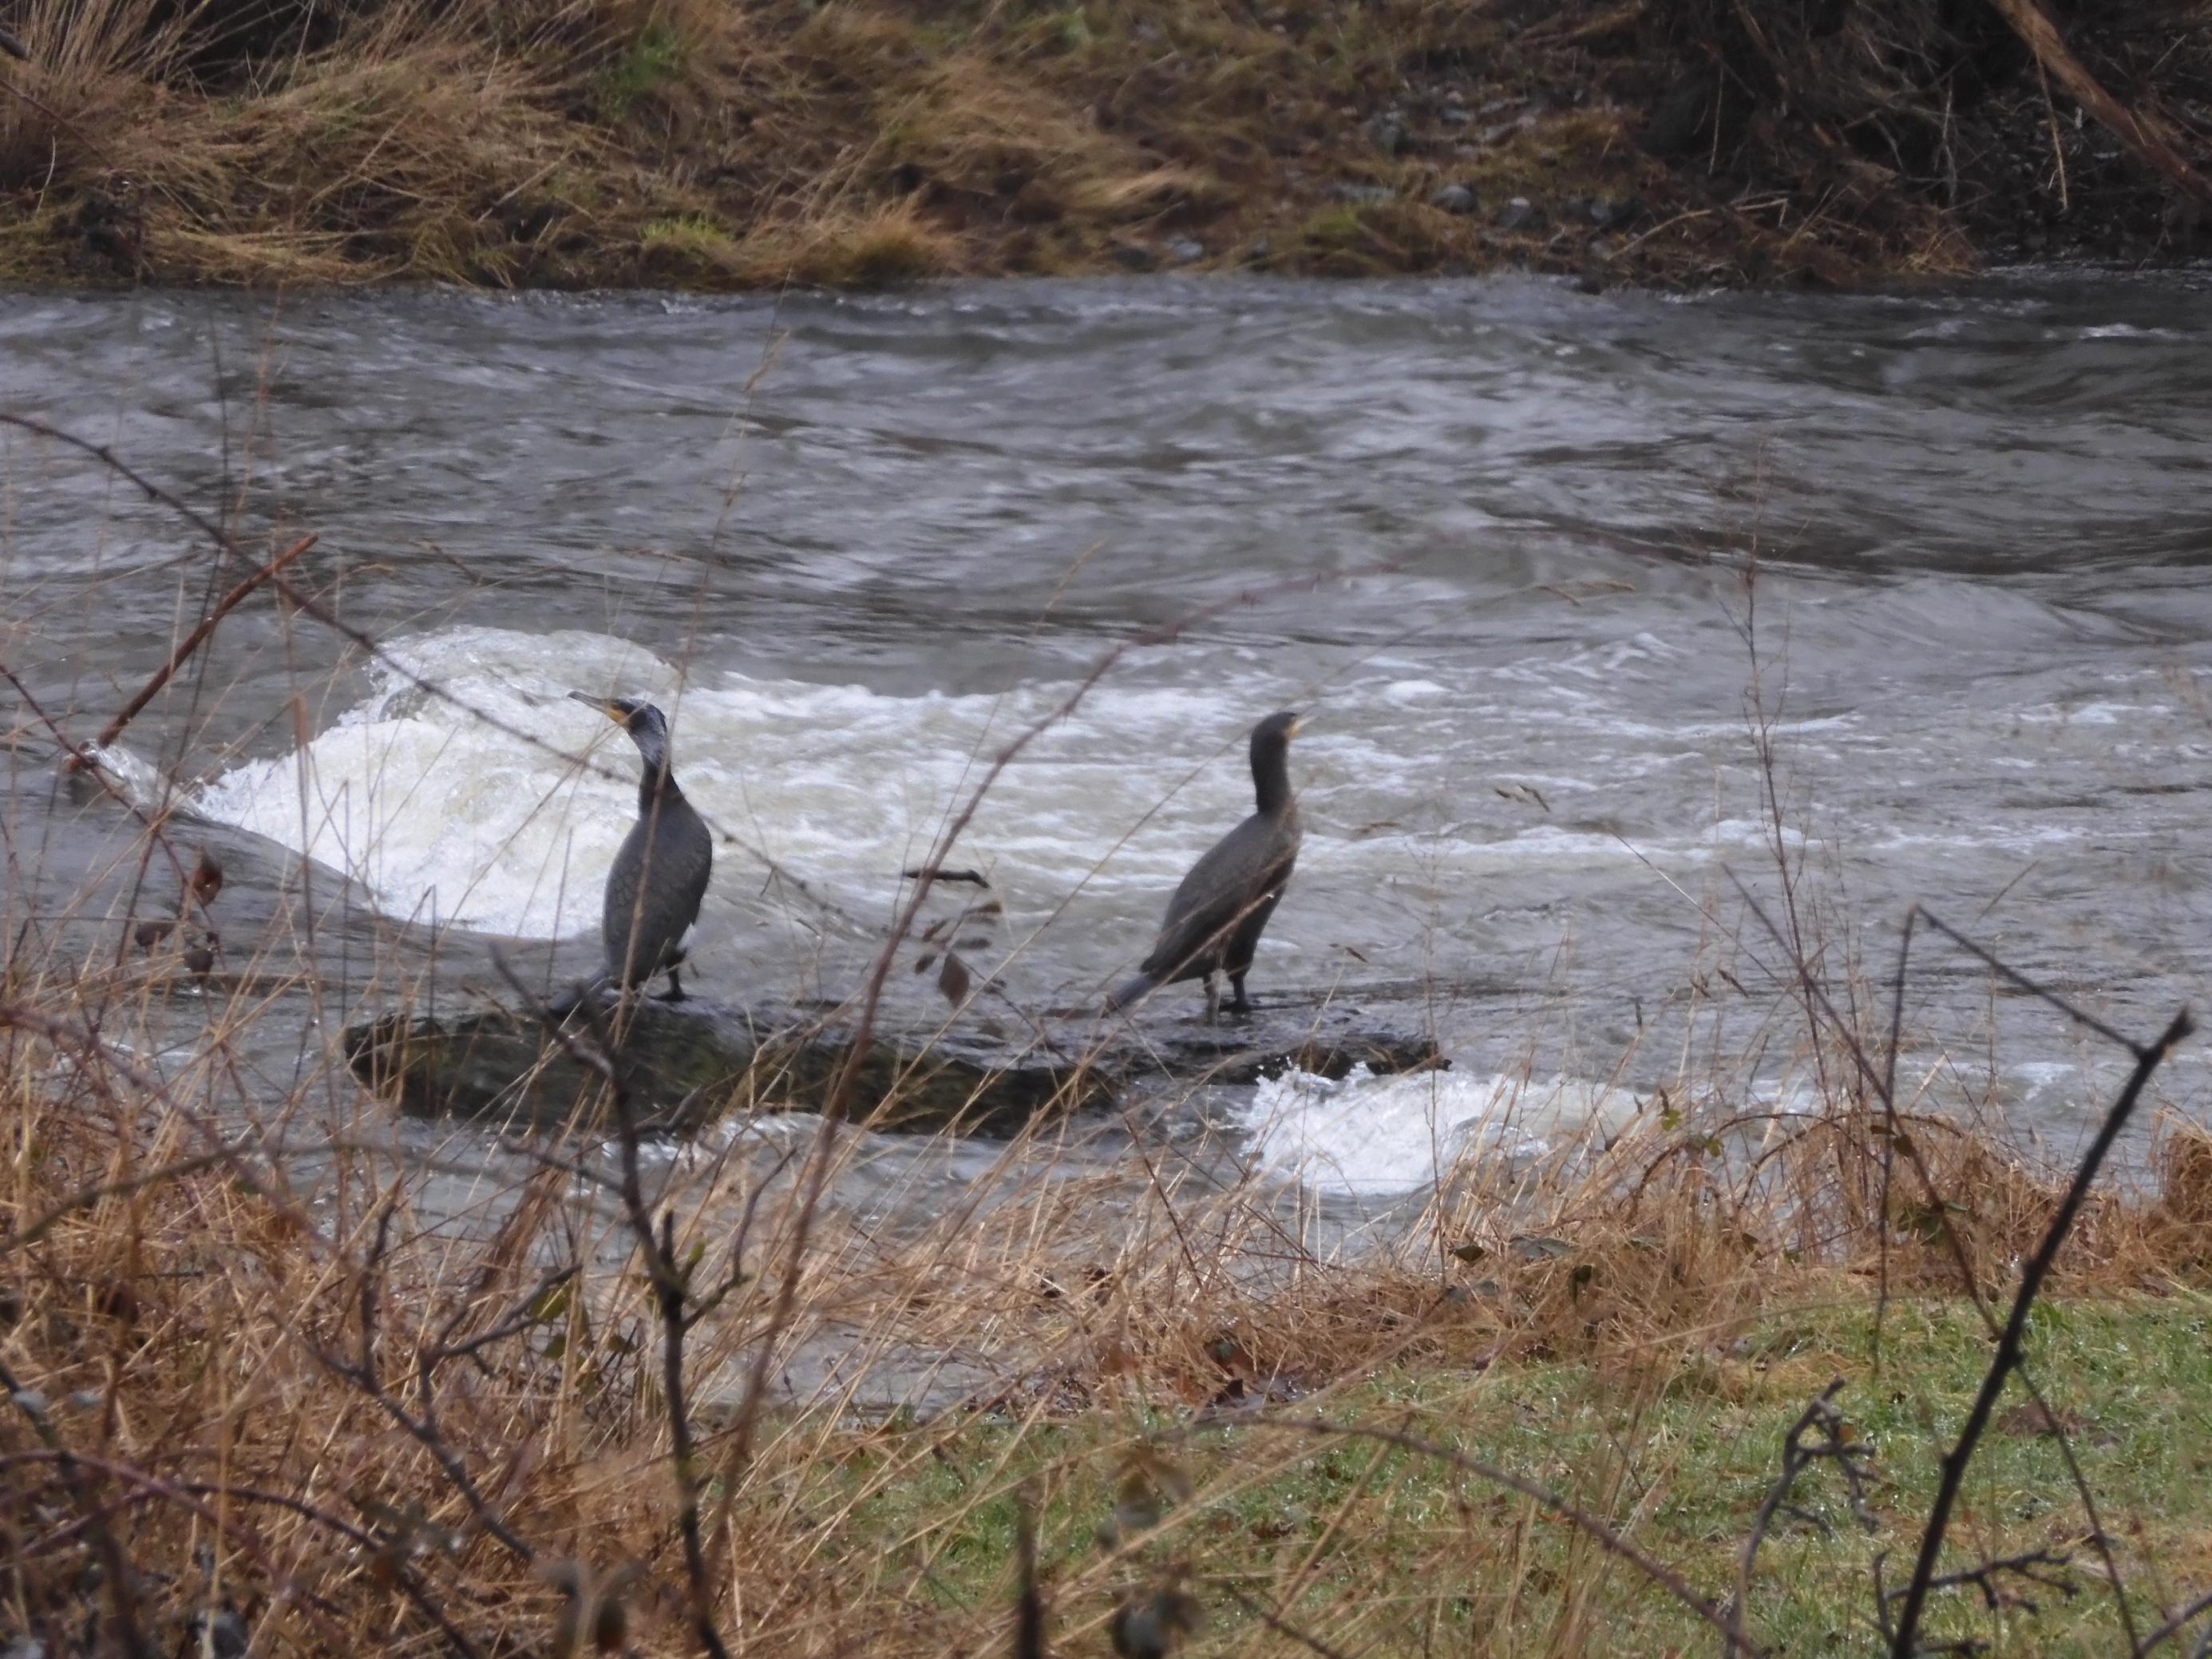 zwei schwarze Vögel mit langen Hälsen sitzen auf einem Felsen in einem Fluss.